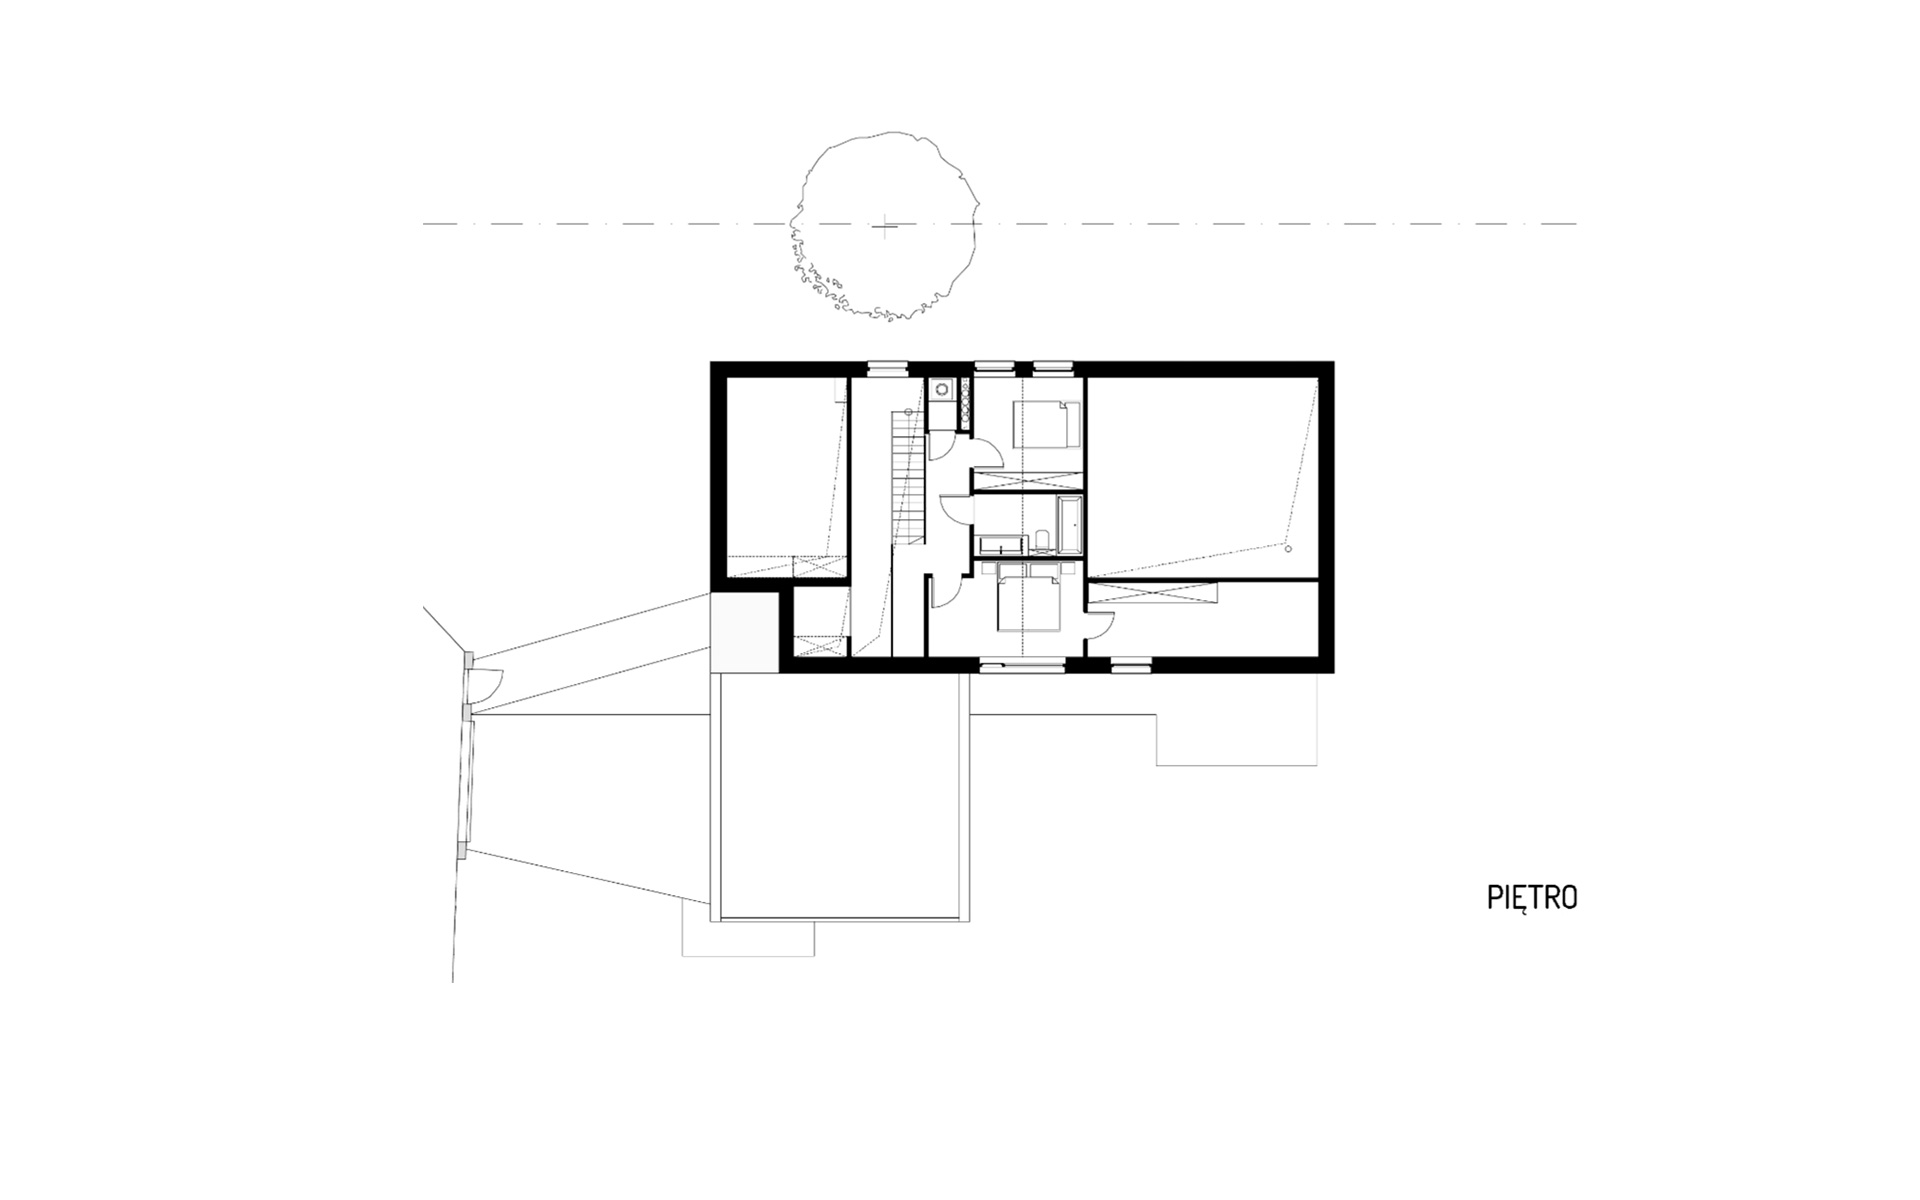 Obraz projektu piętra domu z wiatą garażową i drewnianą elewacją